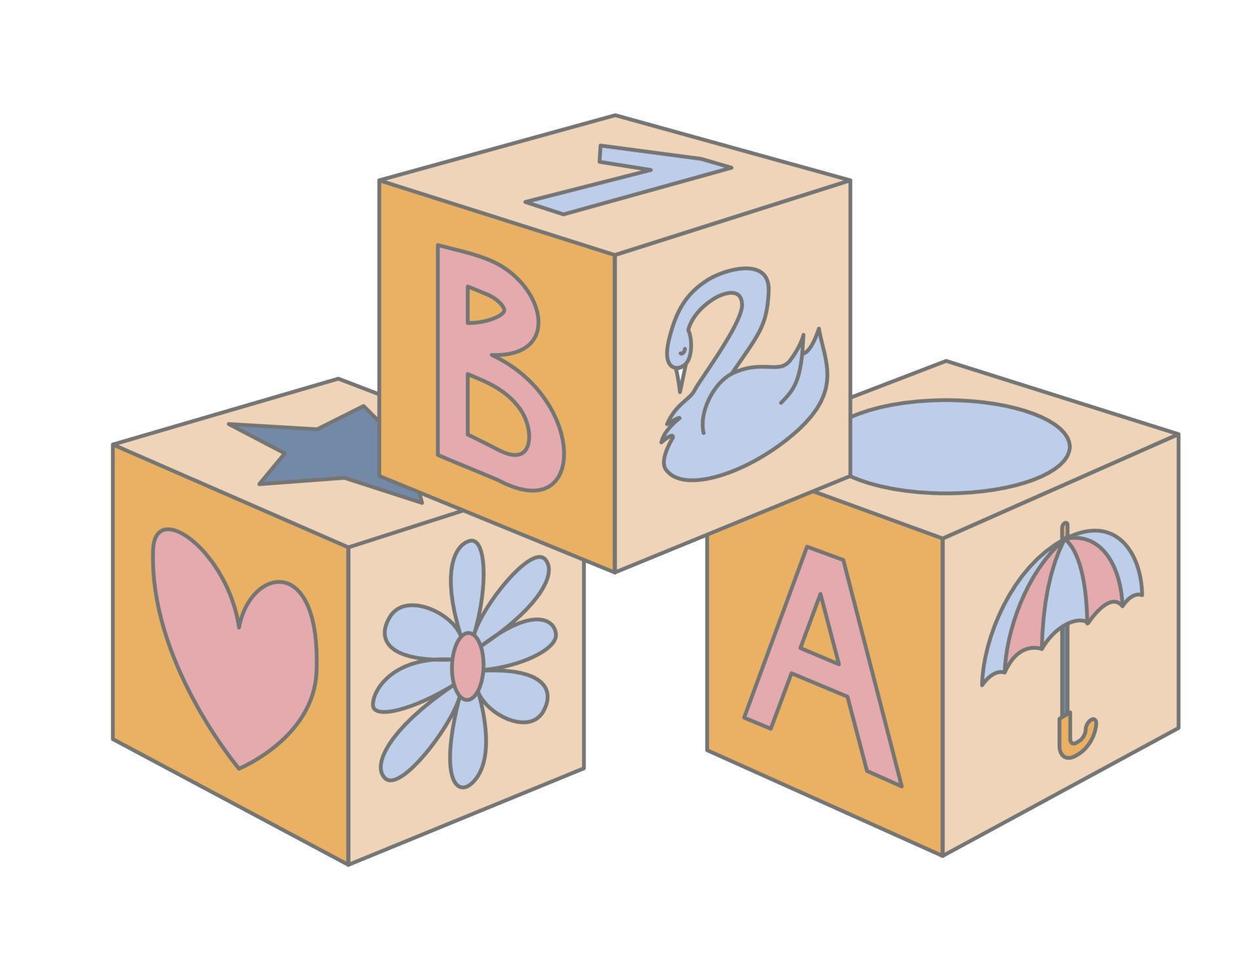 blockera bebis trä- leksak för byggnad. barnslig kuber i söt pastell blå och rosa färger för pojke eller flicka. vektor illustration av unge tegelstenar med brev